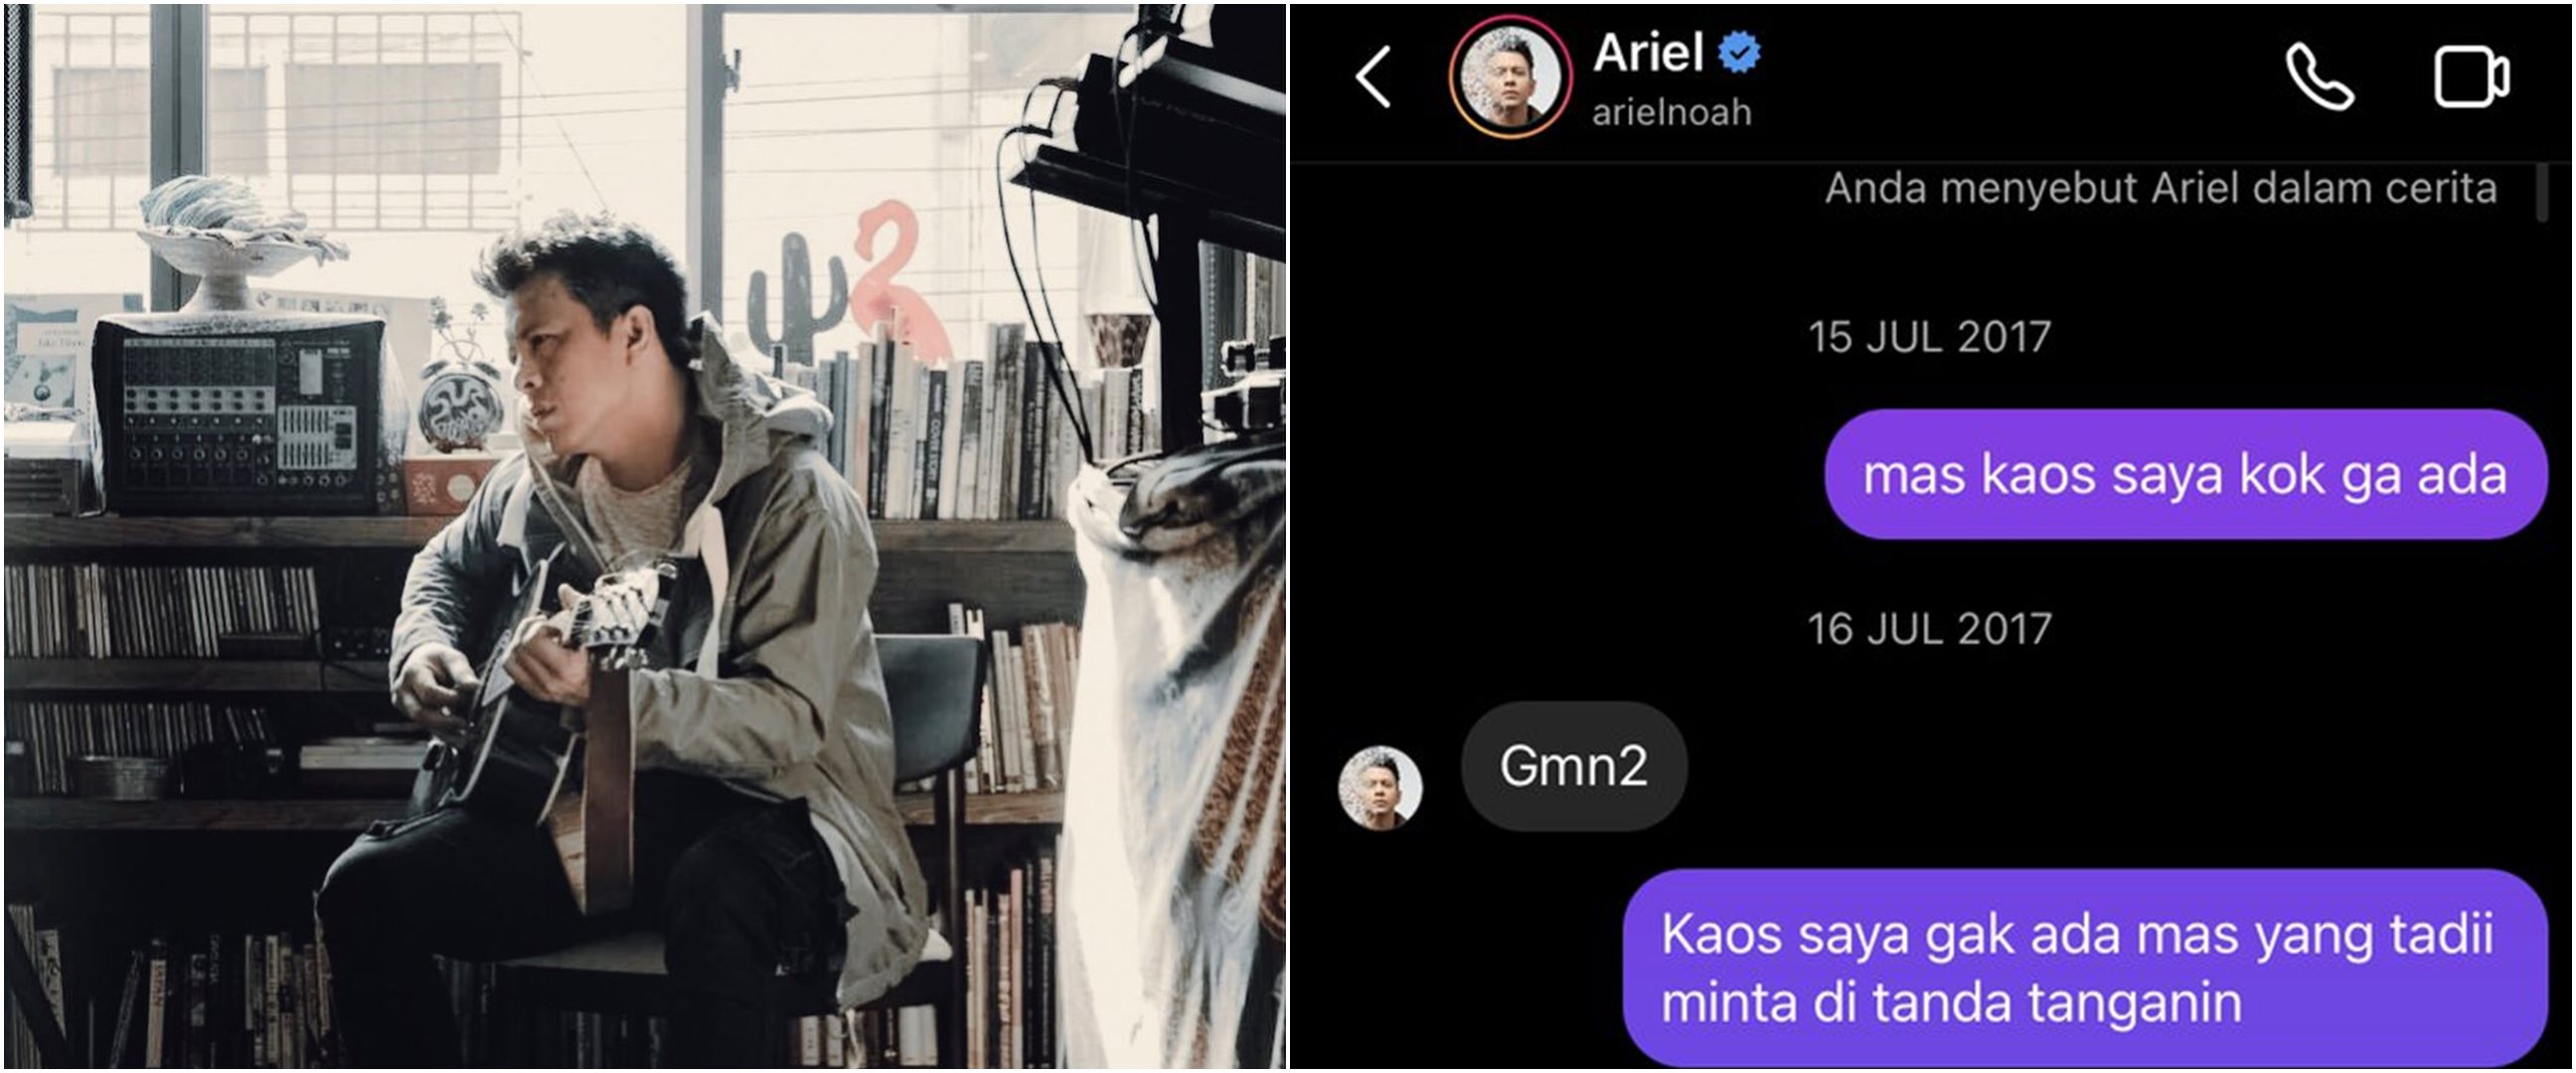 Cerita fans NOAH berbalas pesan Instagram dengan Ariel, ramah banget